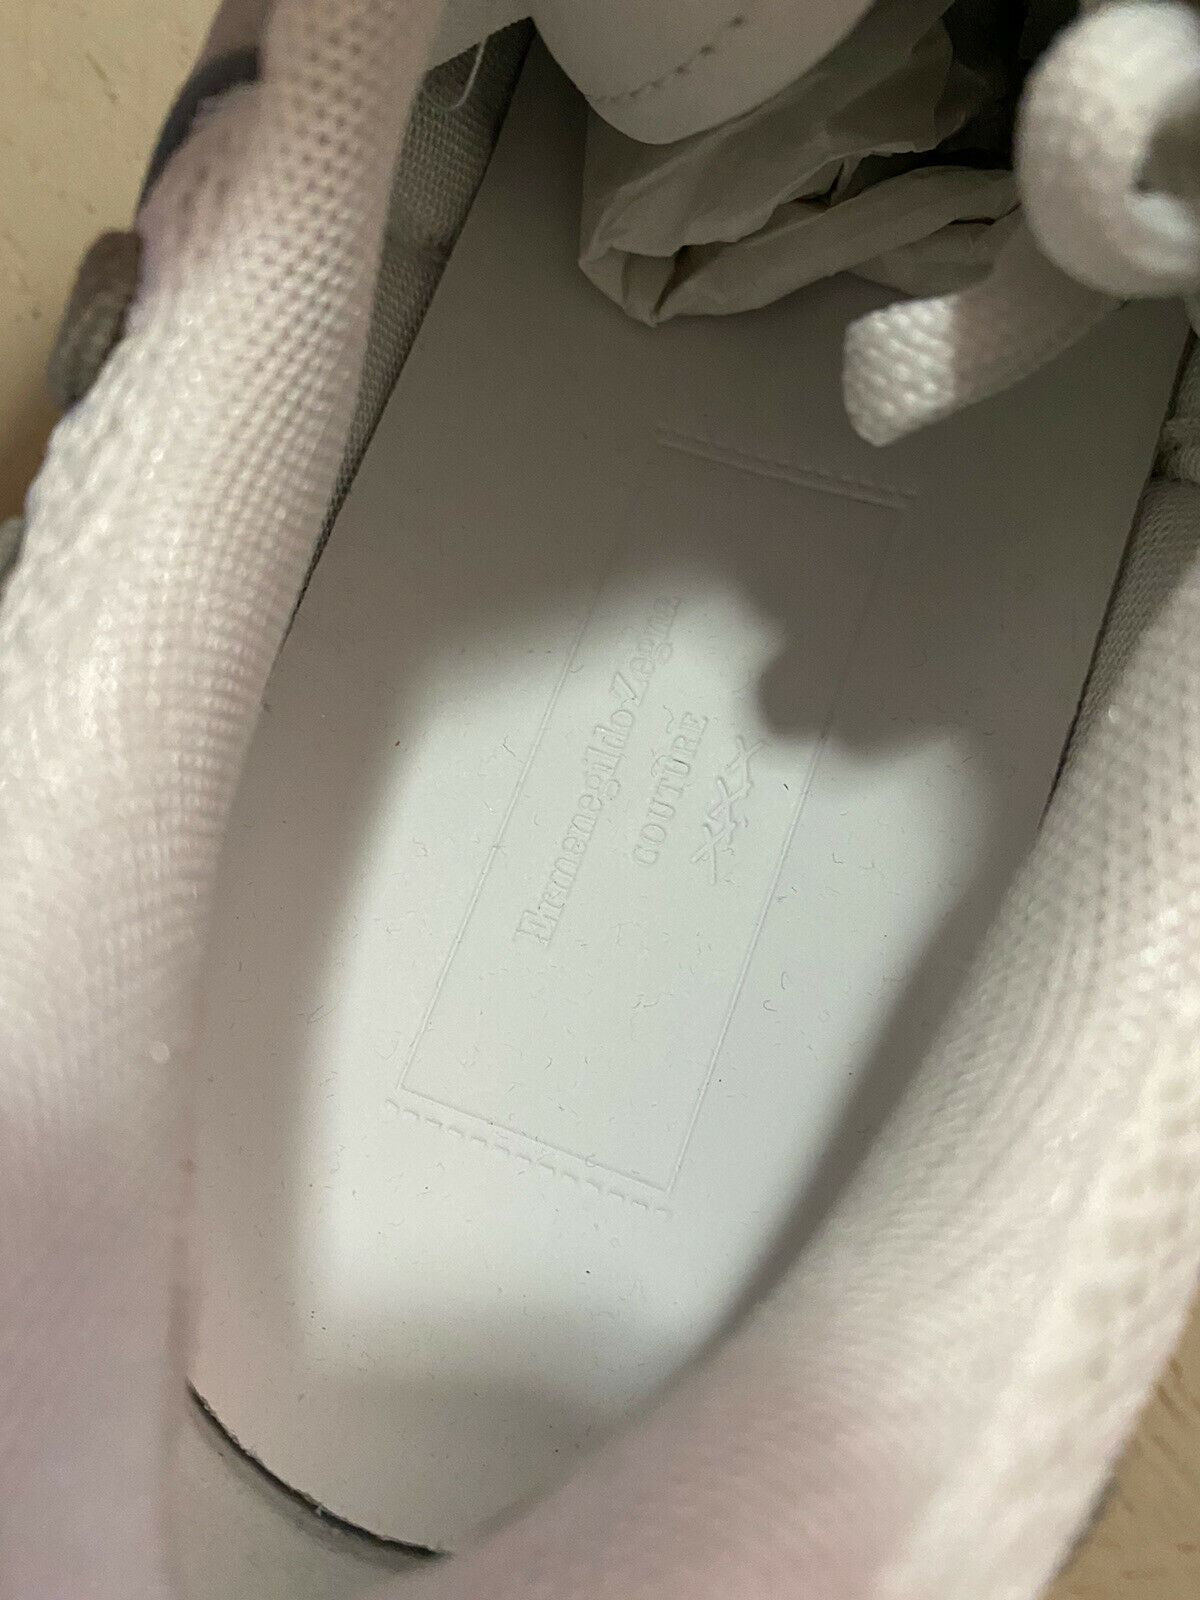 Новые кожаные кроссовки Ermenegildo Zegna Couture за 795 долларов США Белый/Серый 9.5 US Ita